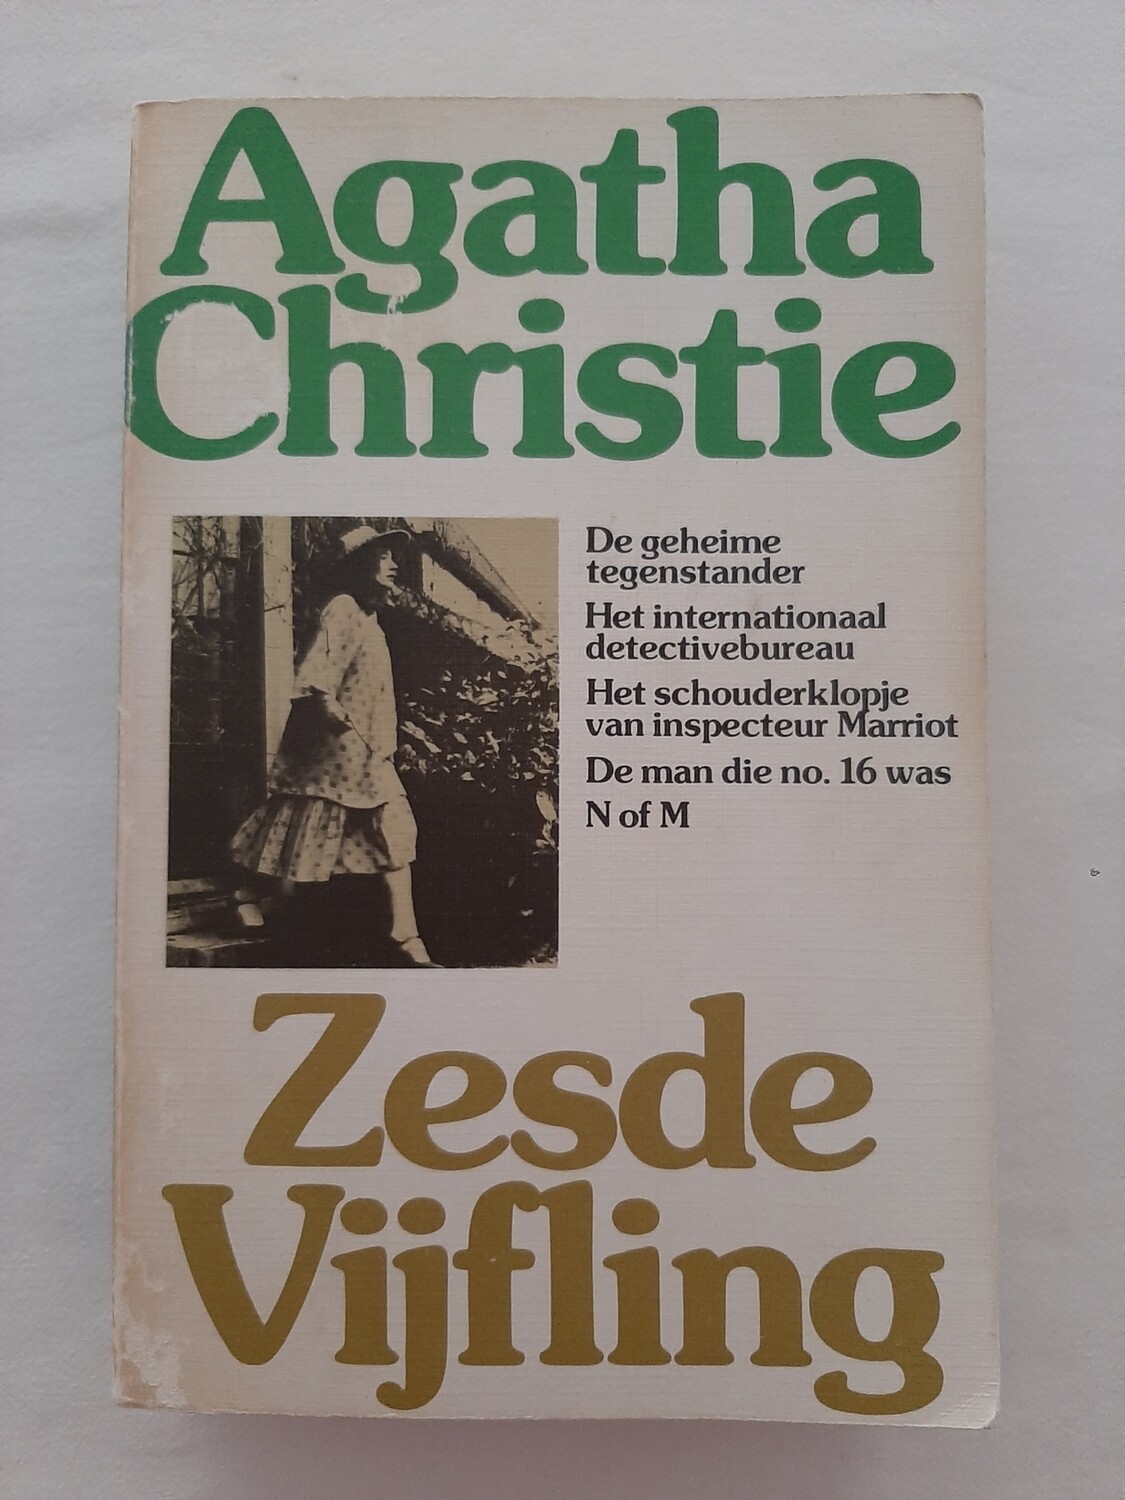 Zesde vijfling - Agatha Christie